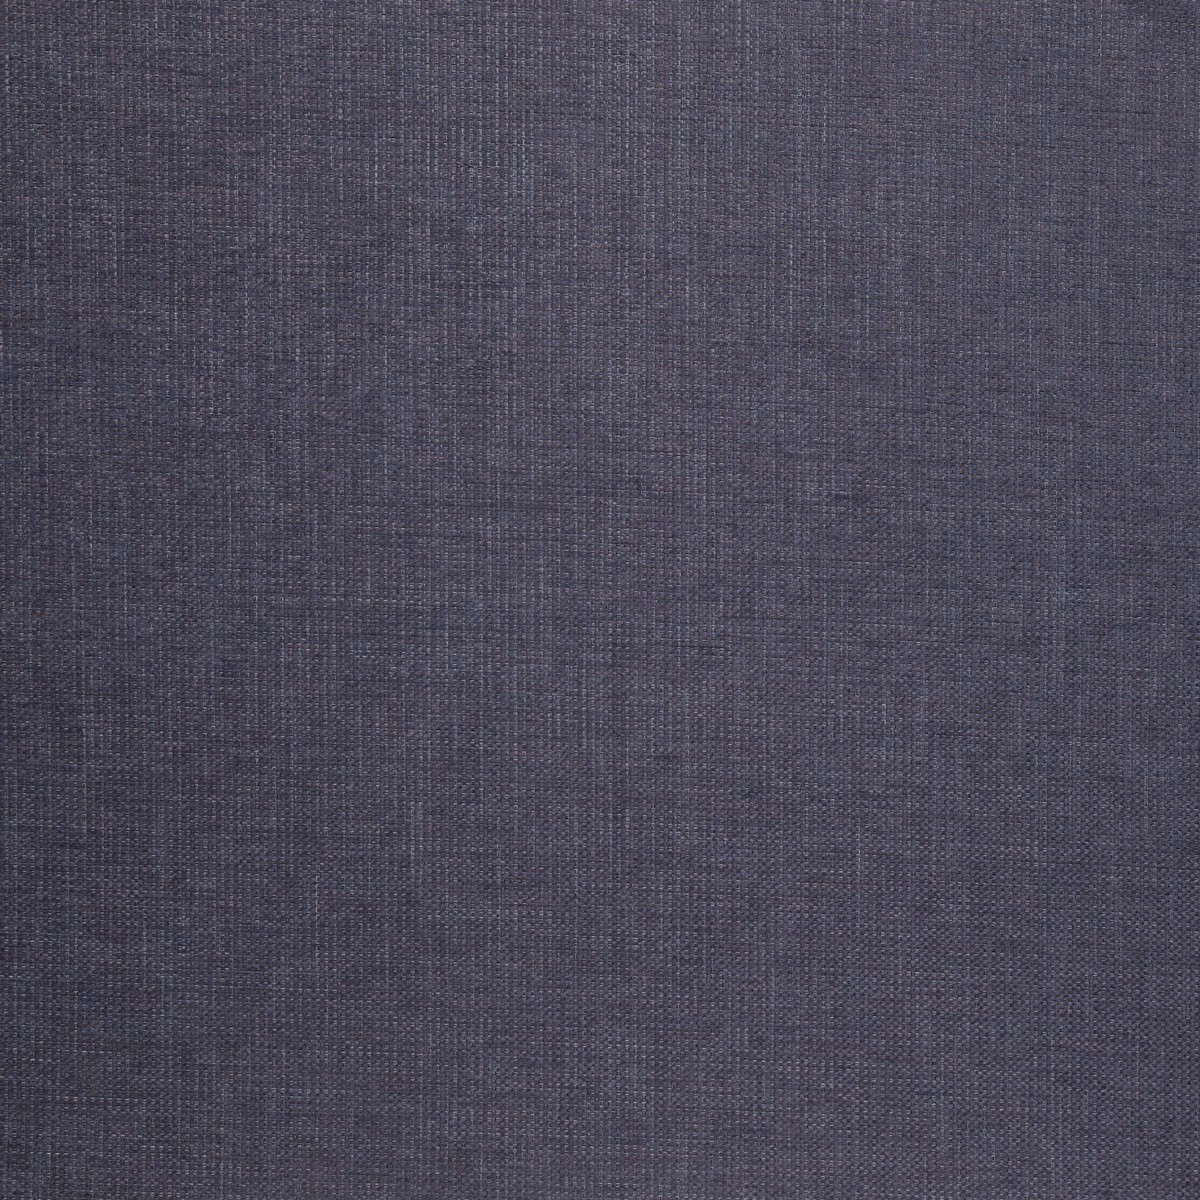 Brecon Iris Fabric by iLiv